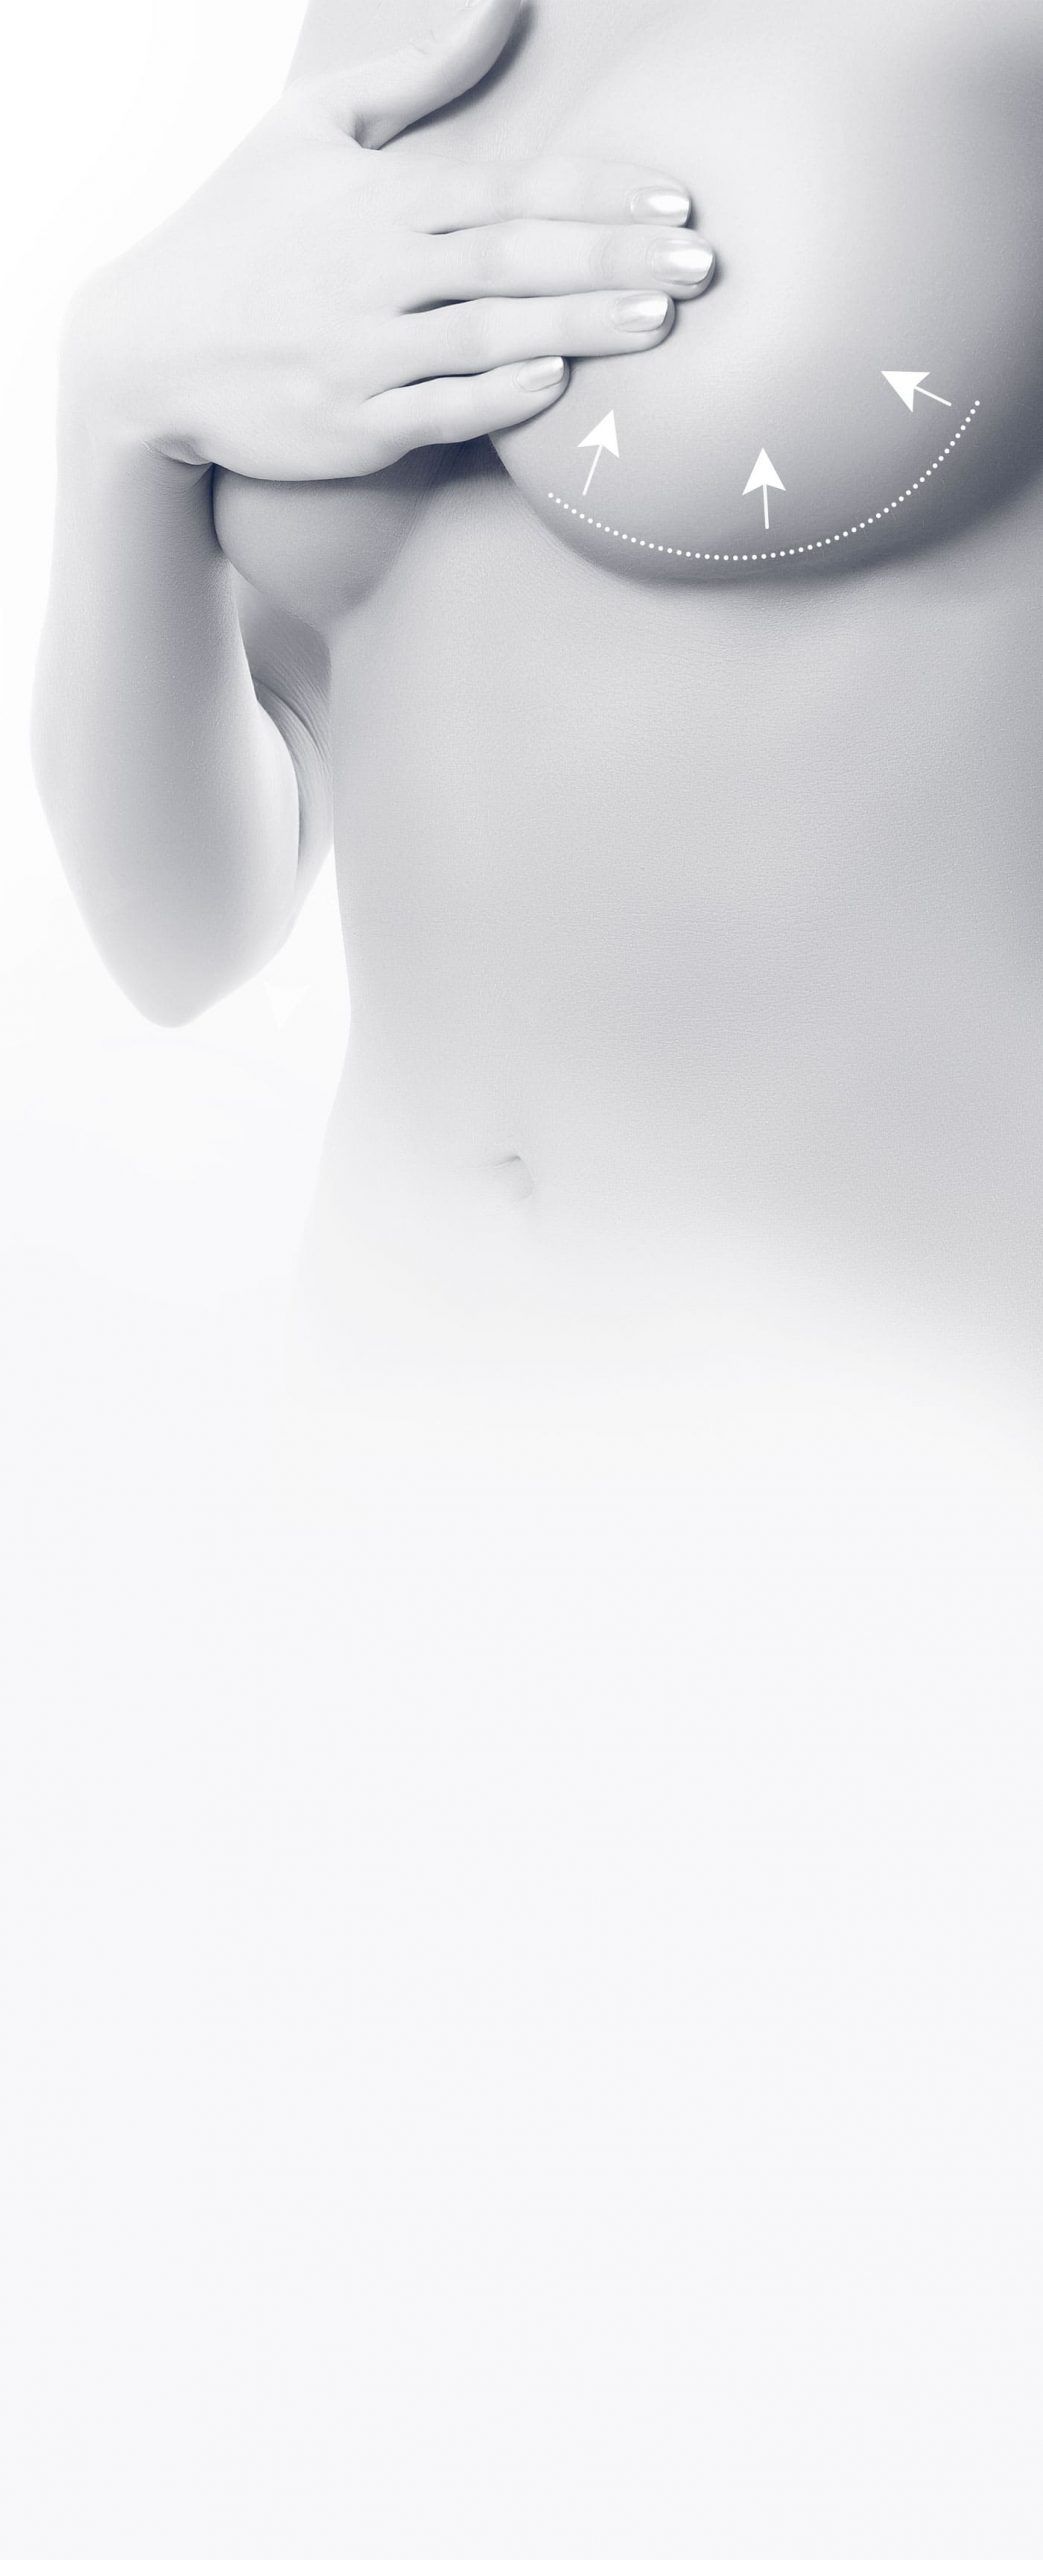 Réduction mammaire - Diminution du volume des seins à Cannes - Dr Laveaux